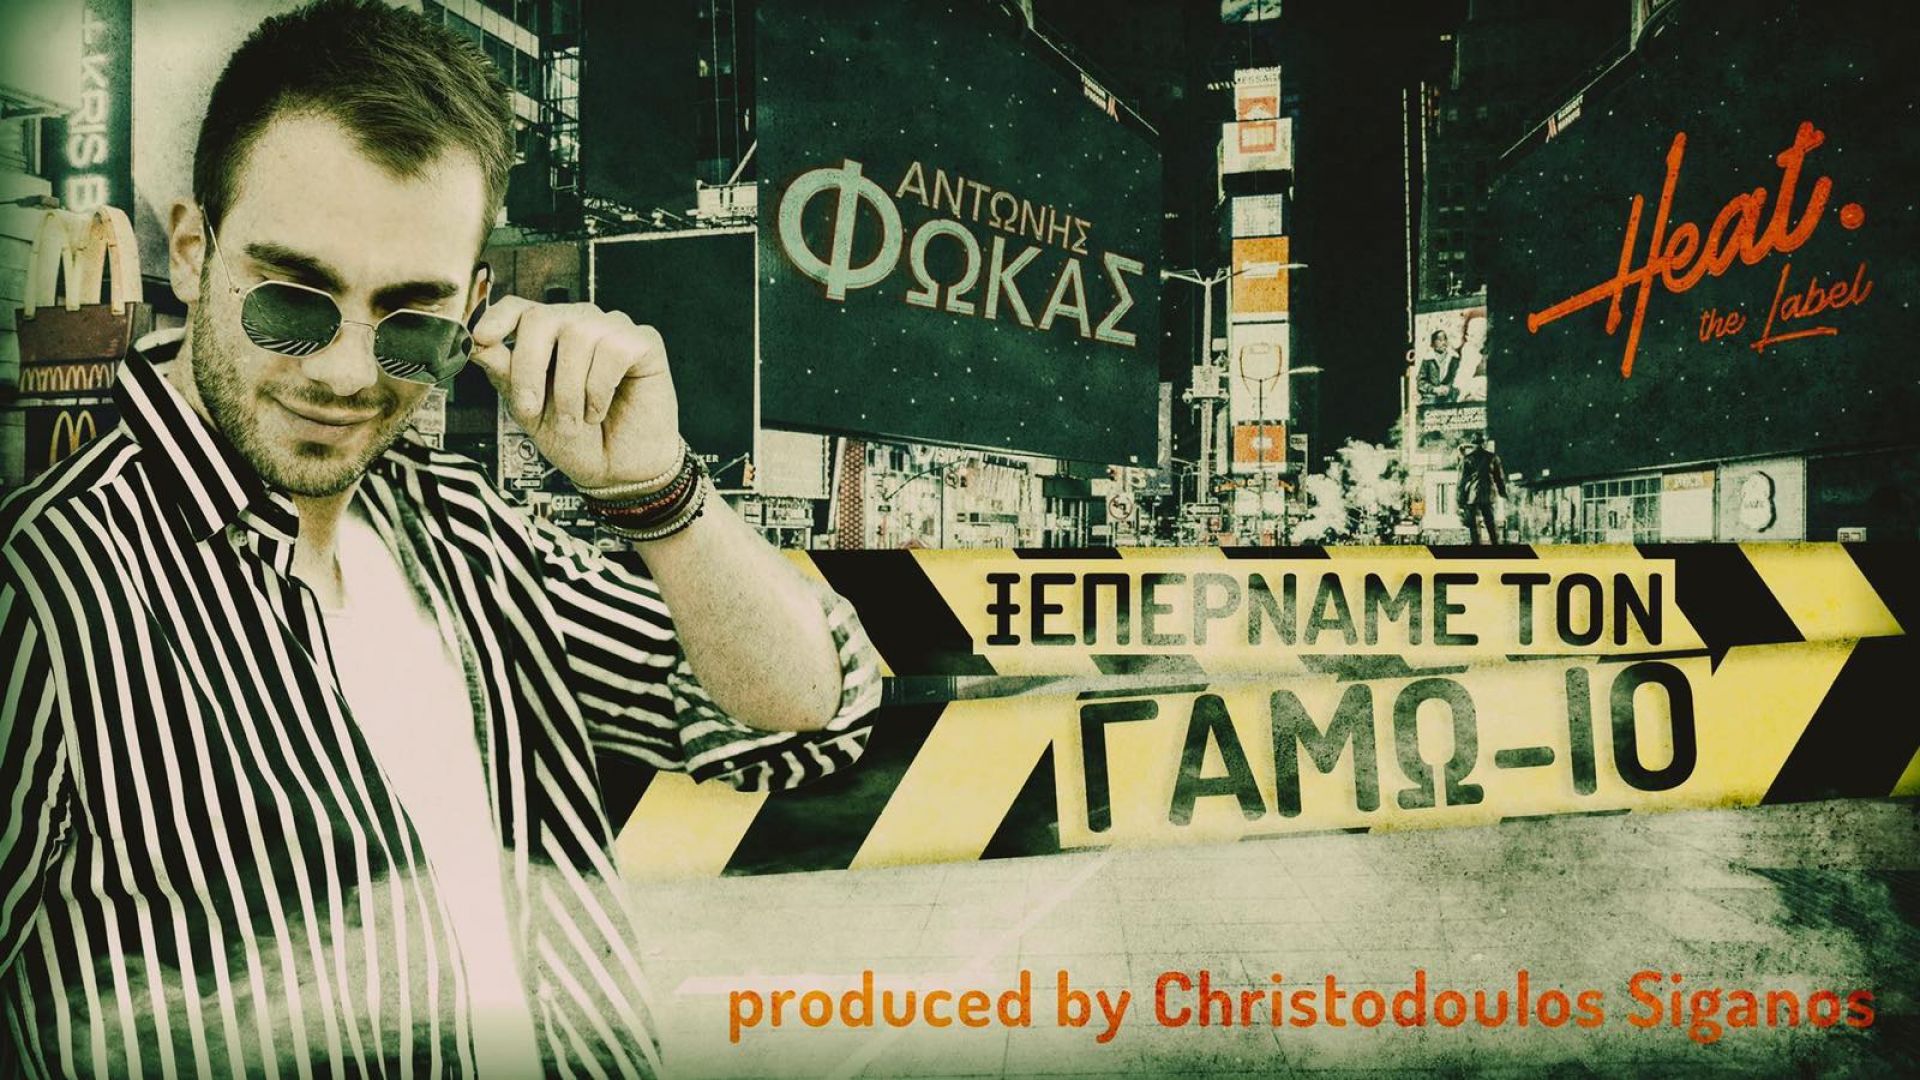 Αντώνης Φωκάς: Το νέο του τραγούδι ενάντια στον κορωνοϊό για το πώς «Ξεπερνάμε τον… ΓΑΜΩ-ΙΟ»